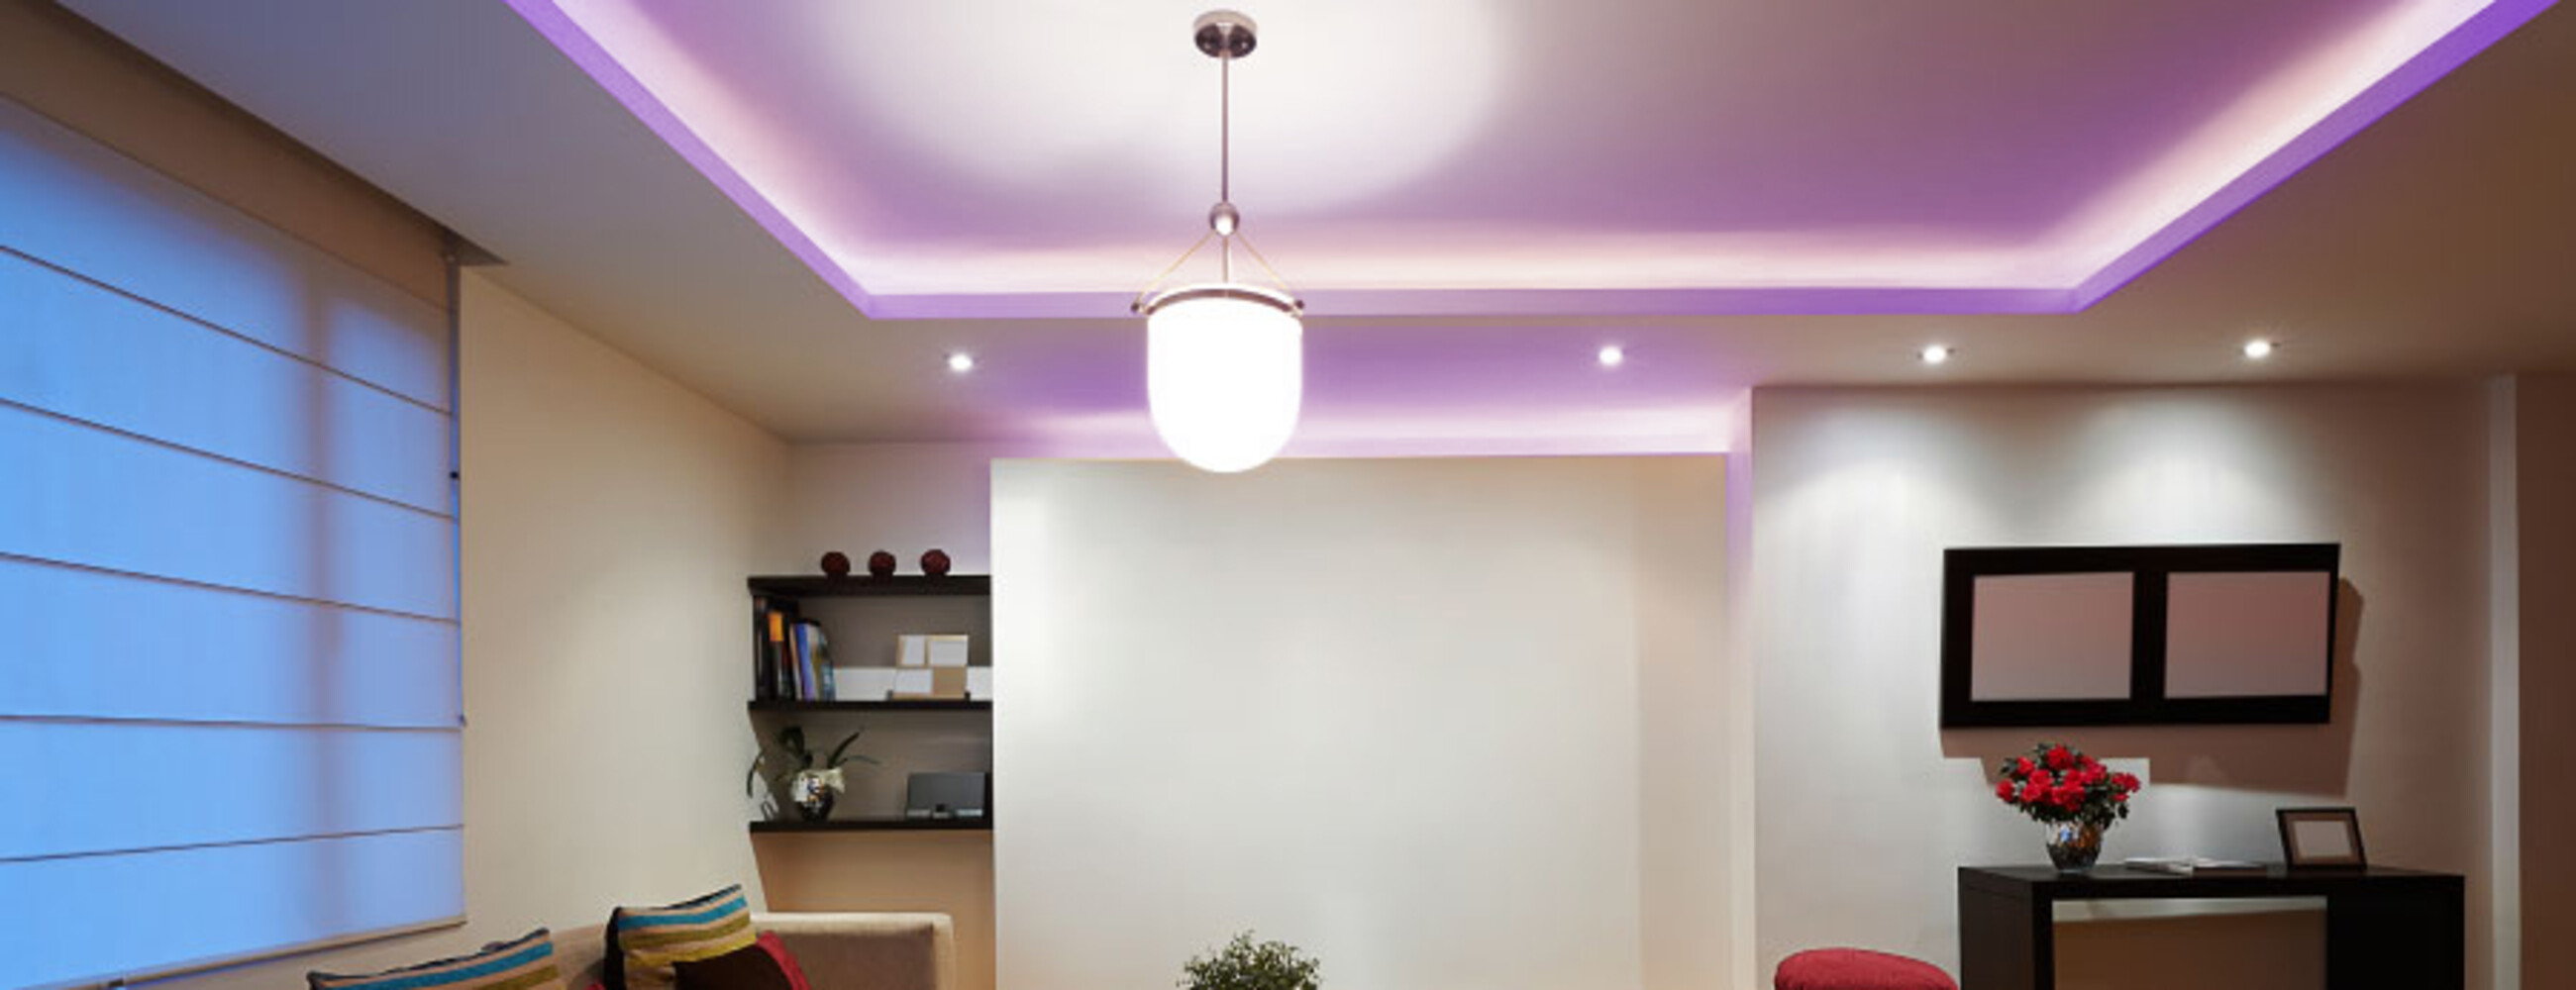 Premium LED Streifen von LED Universum mit Smart Home Funktion und RGBW Farbpalette